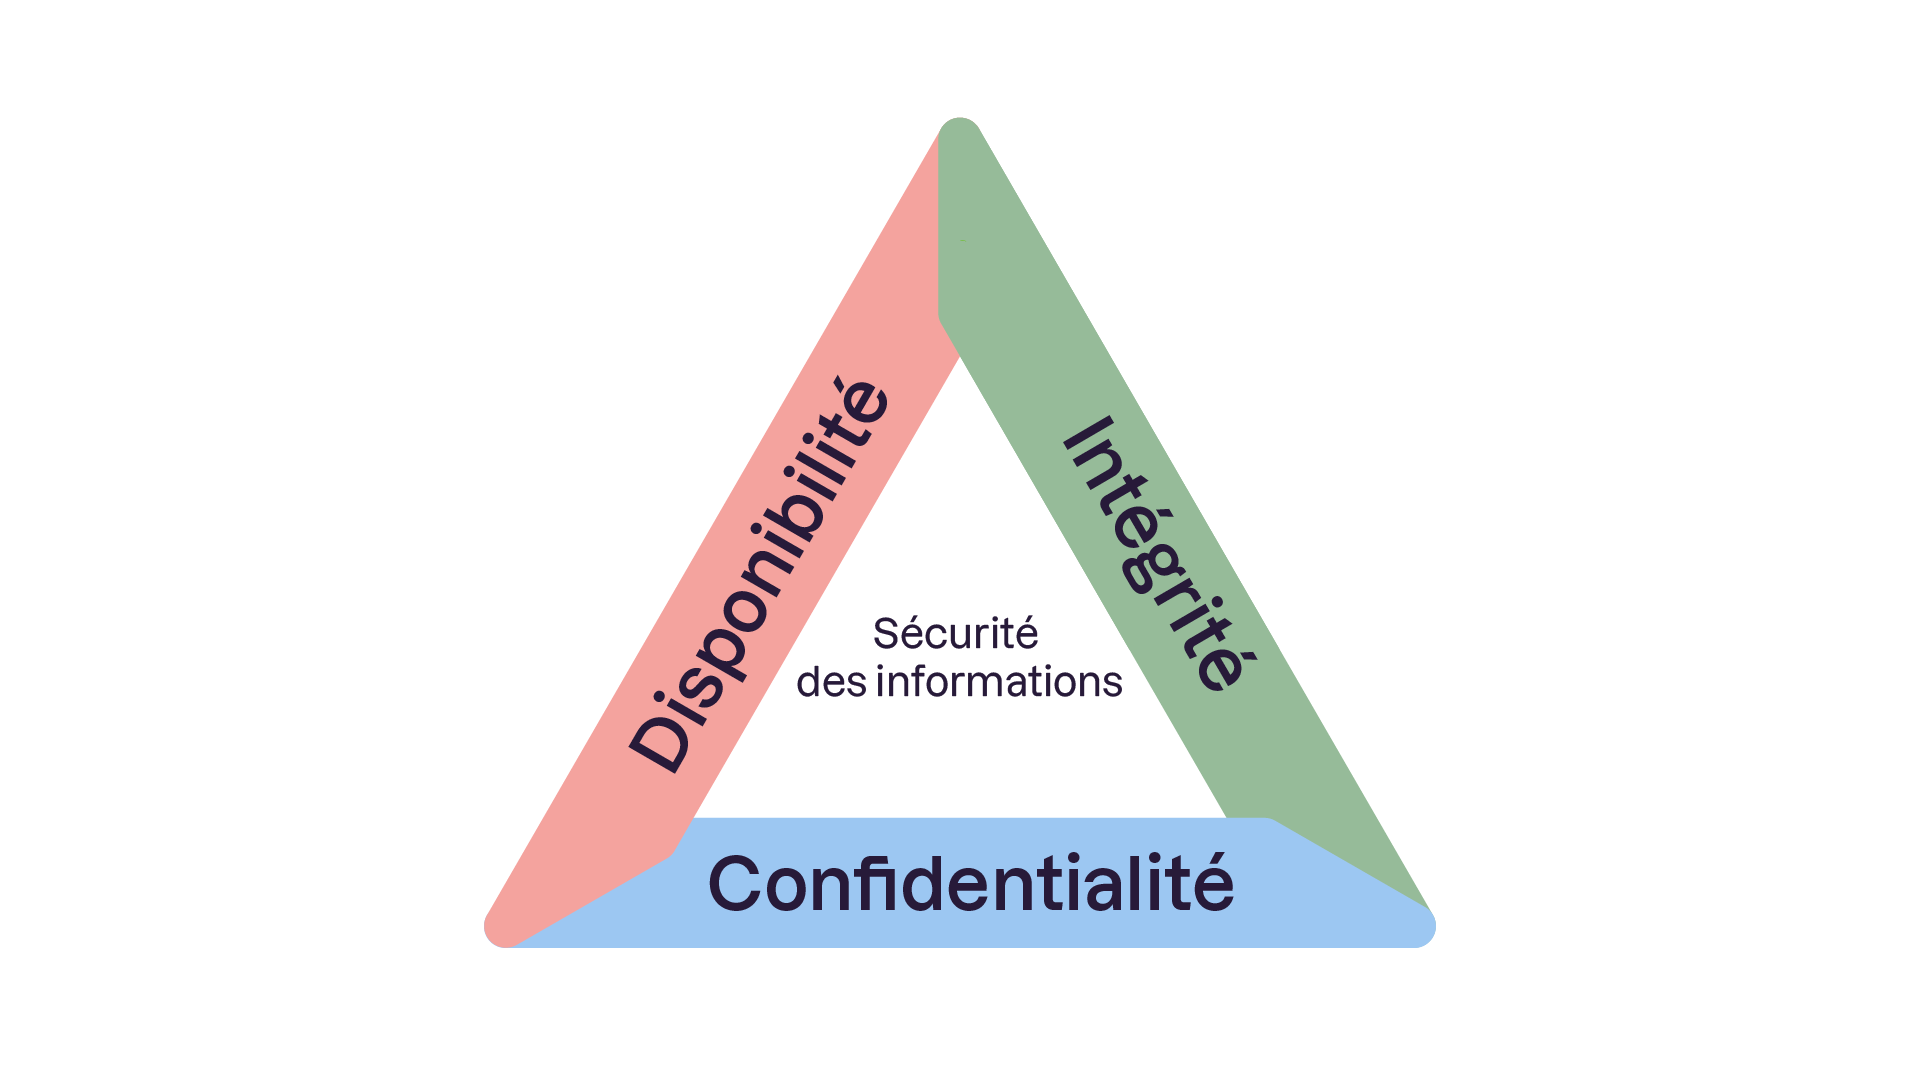 Un triangle avec trois côtés étiquetés représente les piliers de la sécurité de l'information : disponibilité, intégrité en vert et confidentialité